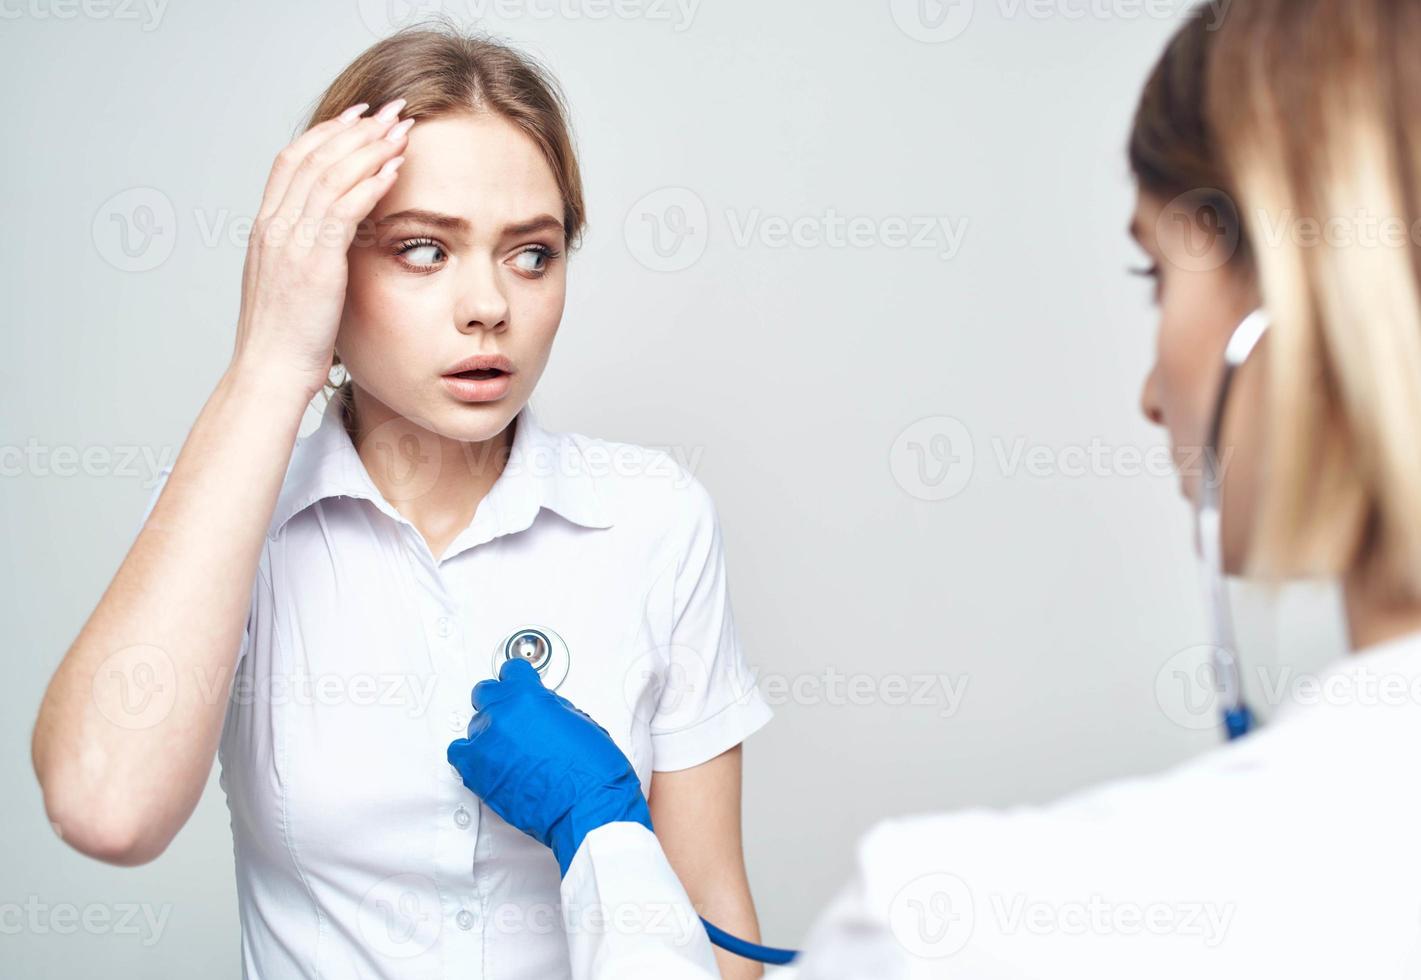 femme patient Se plaint de mal de crâne à médecin avec stéthoscope photo